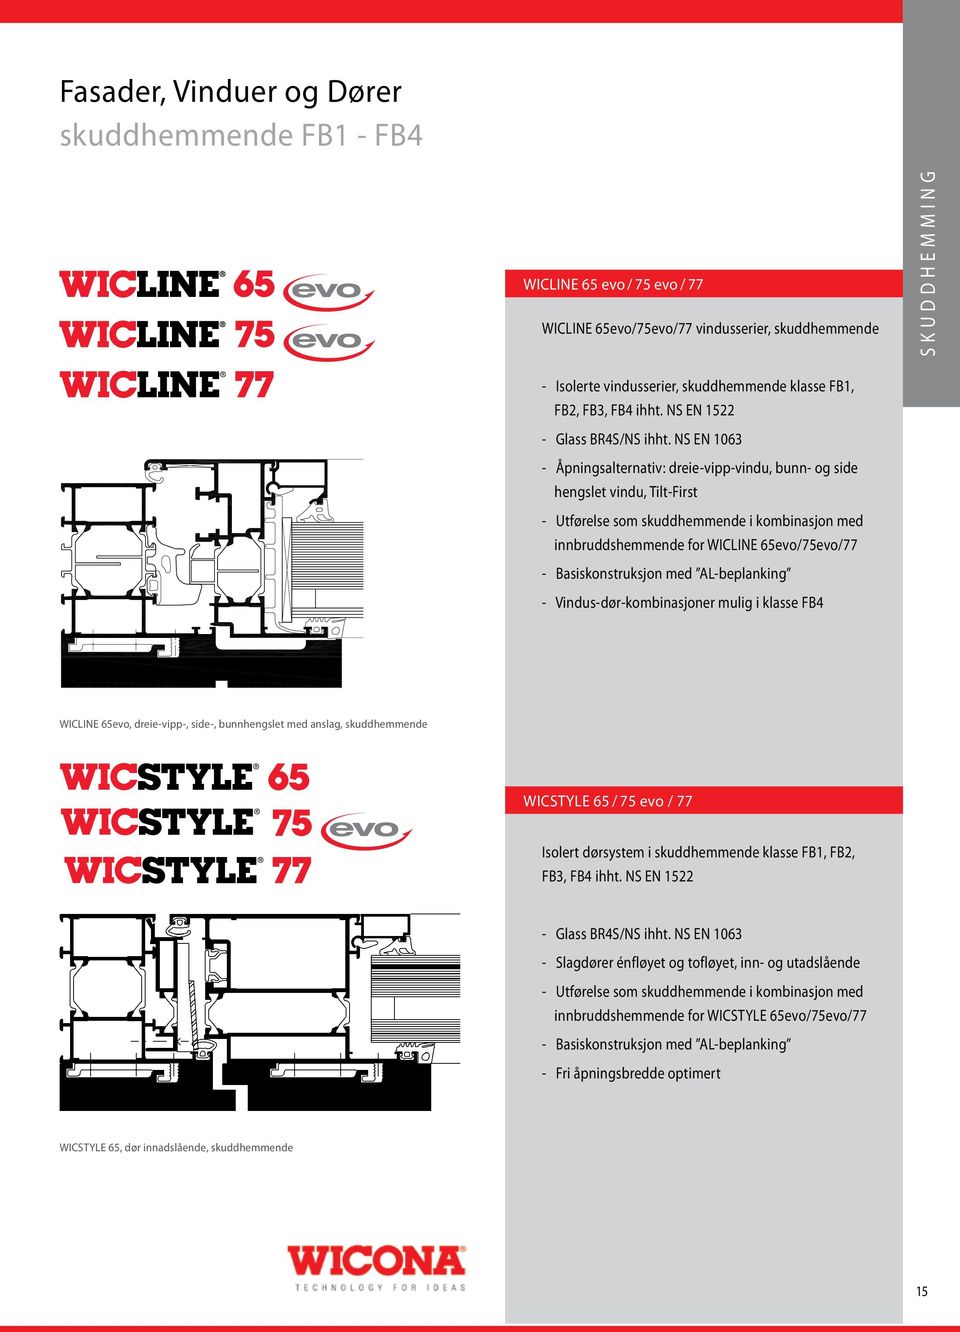 NS EN 1063 - Åpningsalternativ: dreie-vipp-vindu, bunn- og side hengslet vindu, Tilt-First - Utførelse som skuddhemmende i kombinasjon med innbruddshemmende for WICLINE 65evo/75evo/77 -